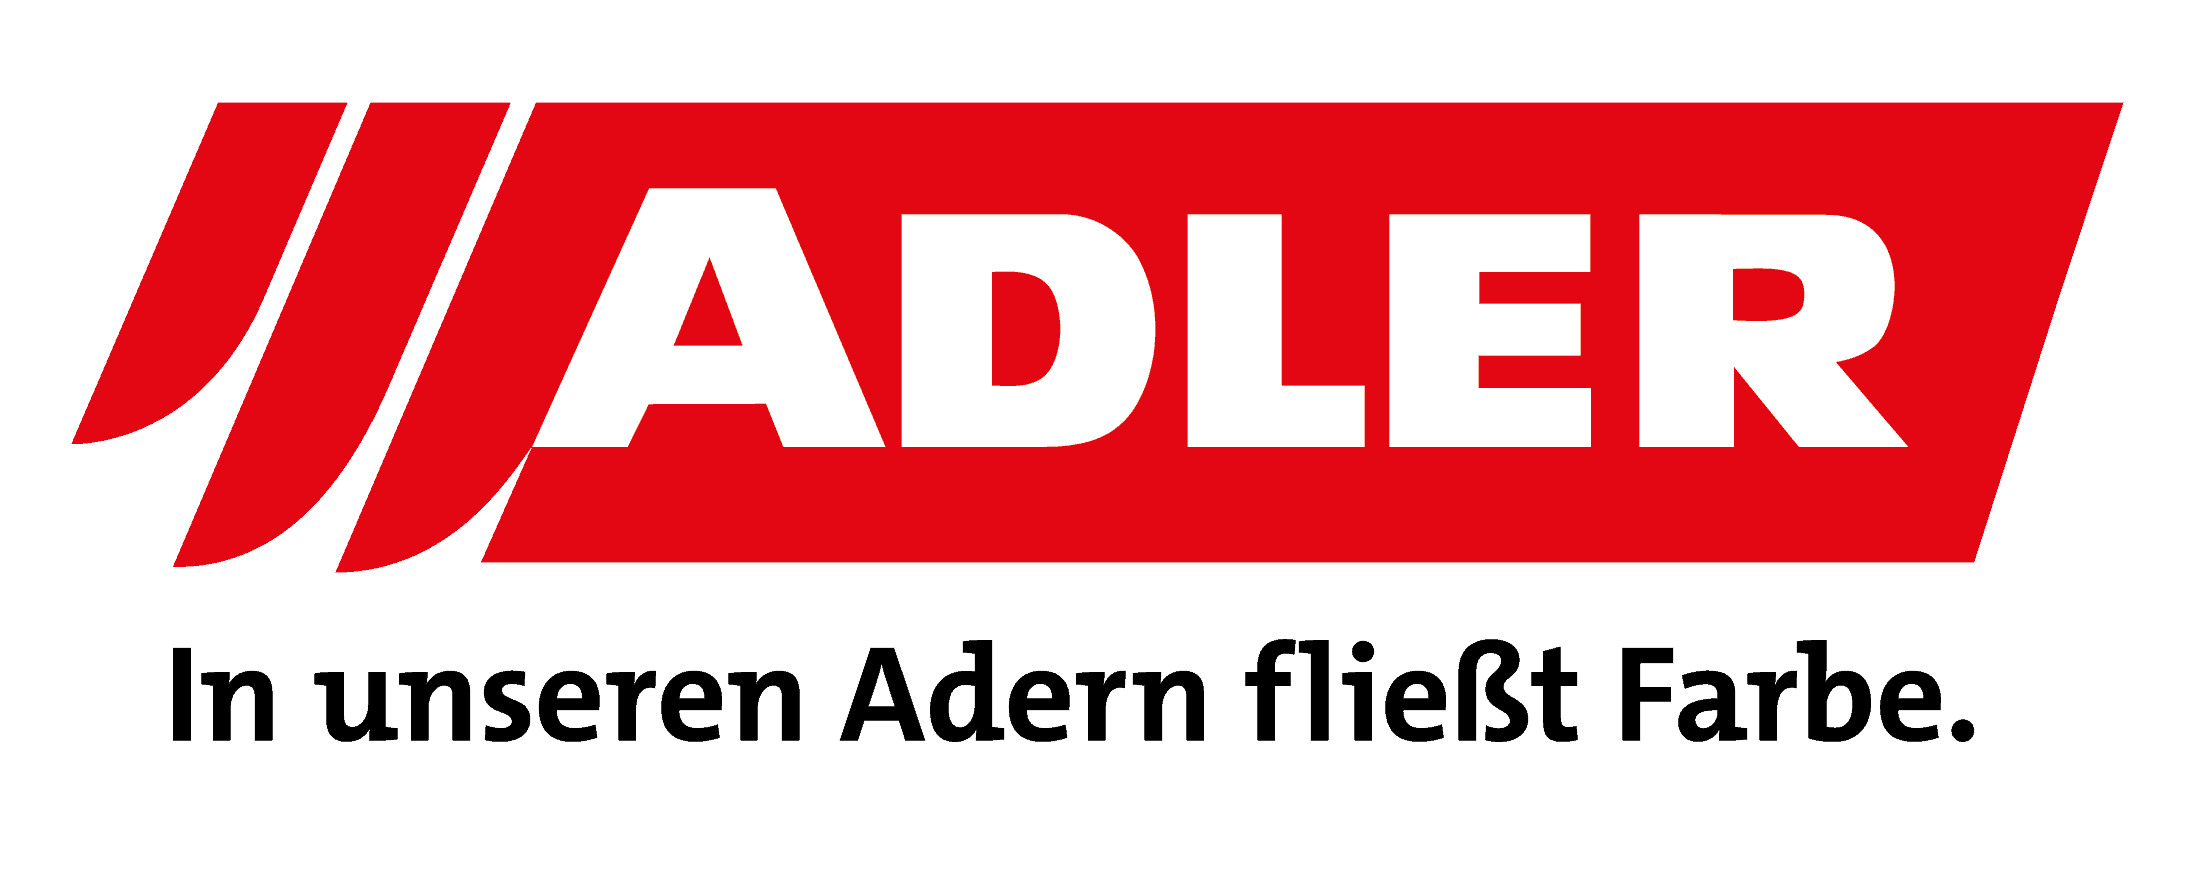 ADLER Logo Claim 4c